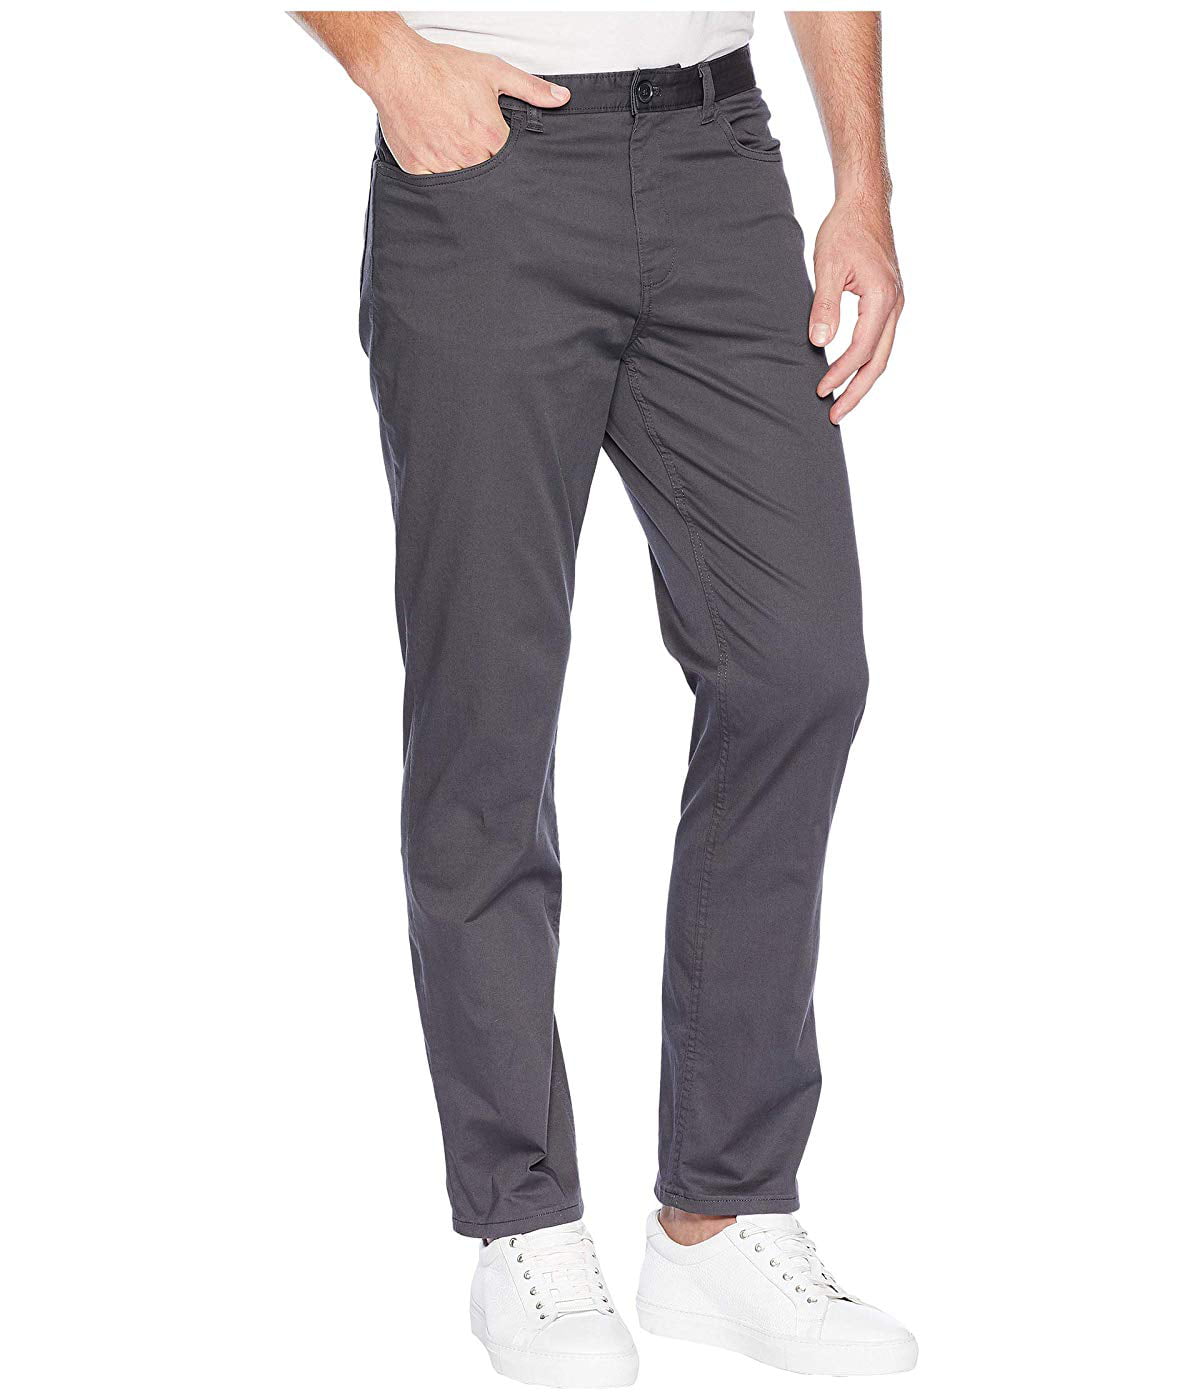 Calvin Klein Men's Authentic 5 Pocket Pants - Slim Fit, Asphalt, 36X34 -  